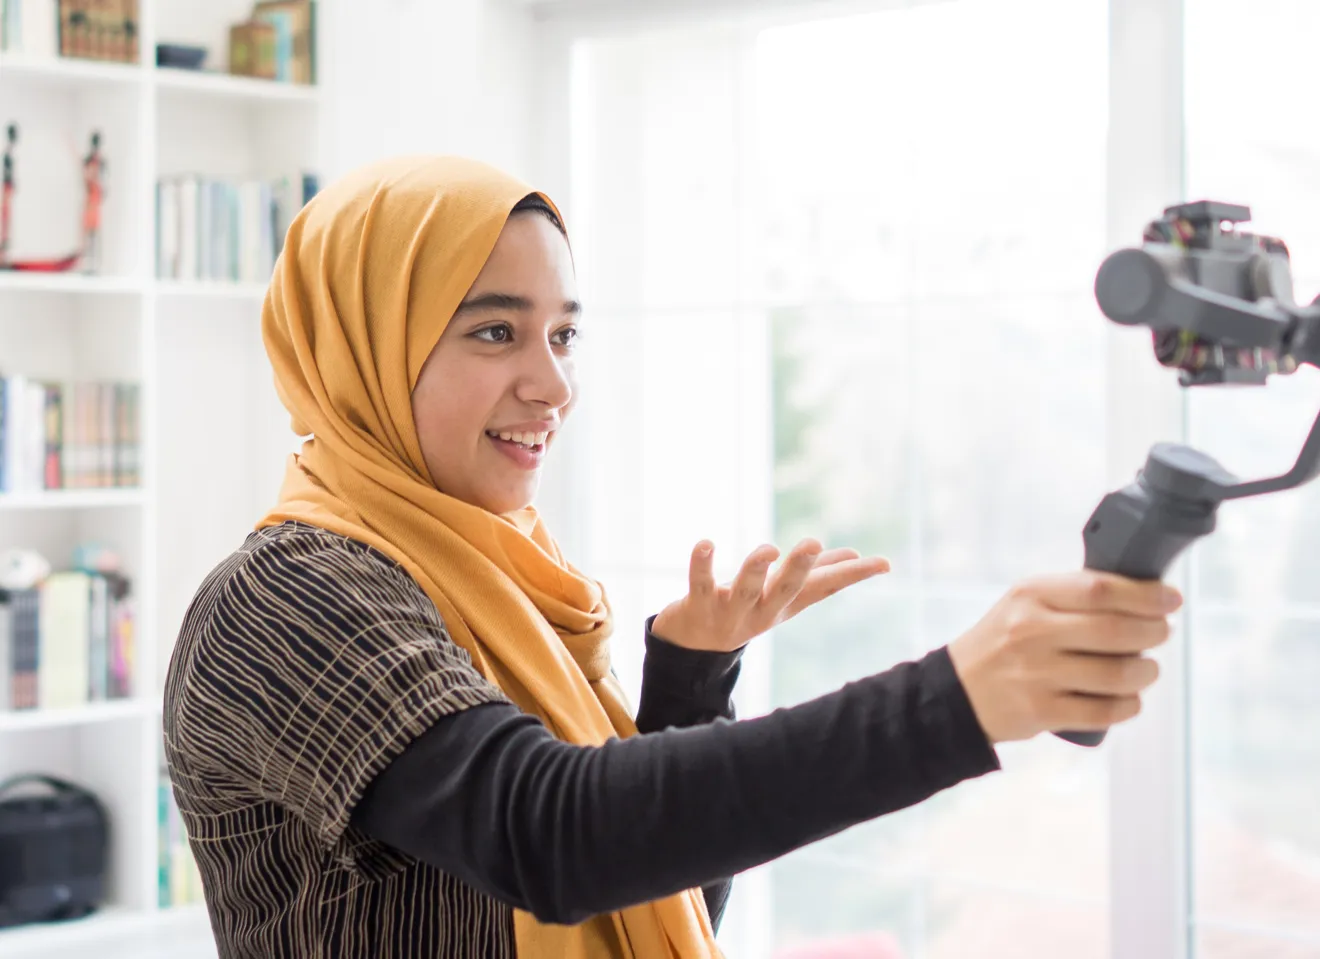 kvinne ikledt hijab filmer seg selv for sosiale medier